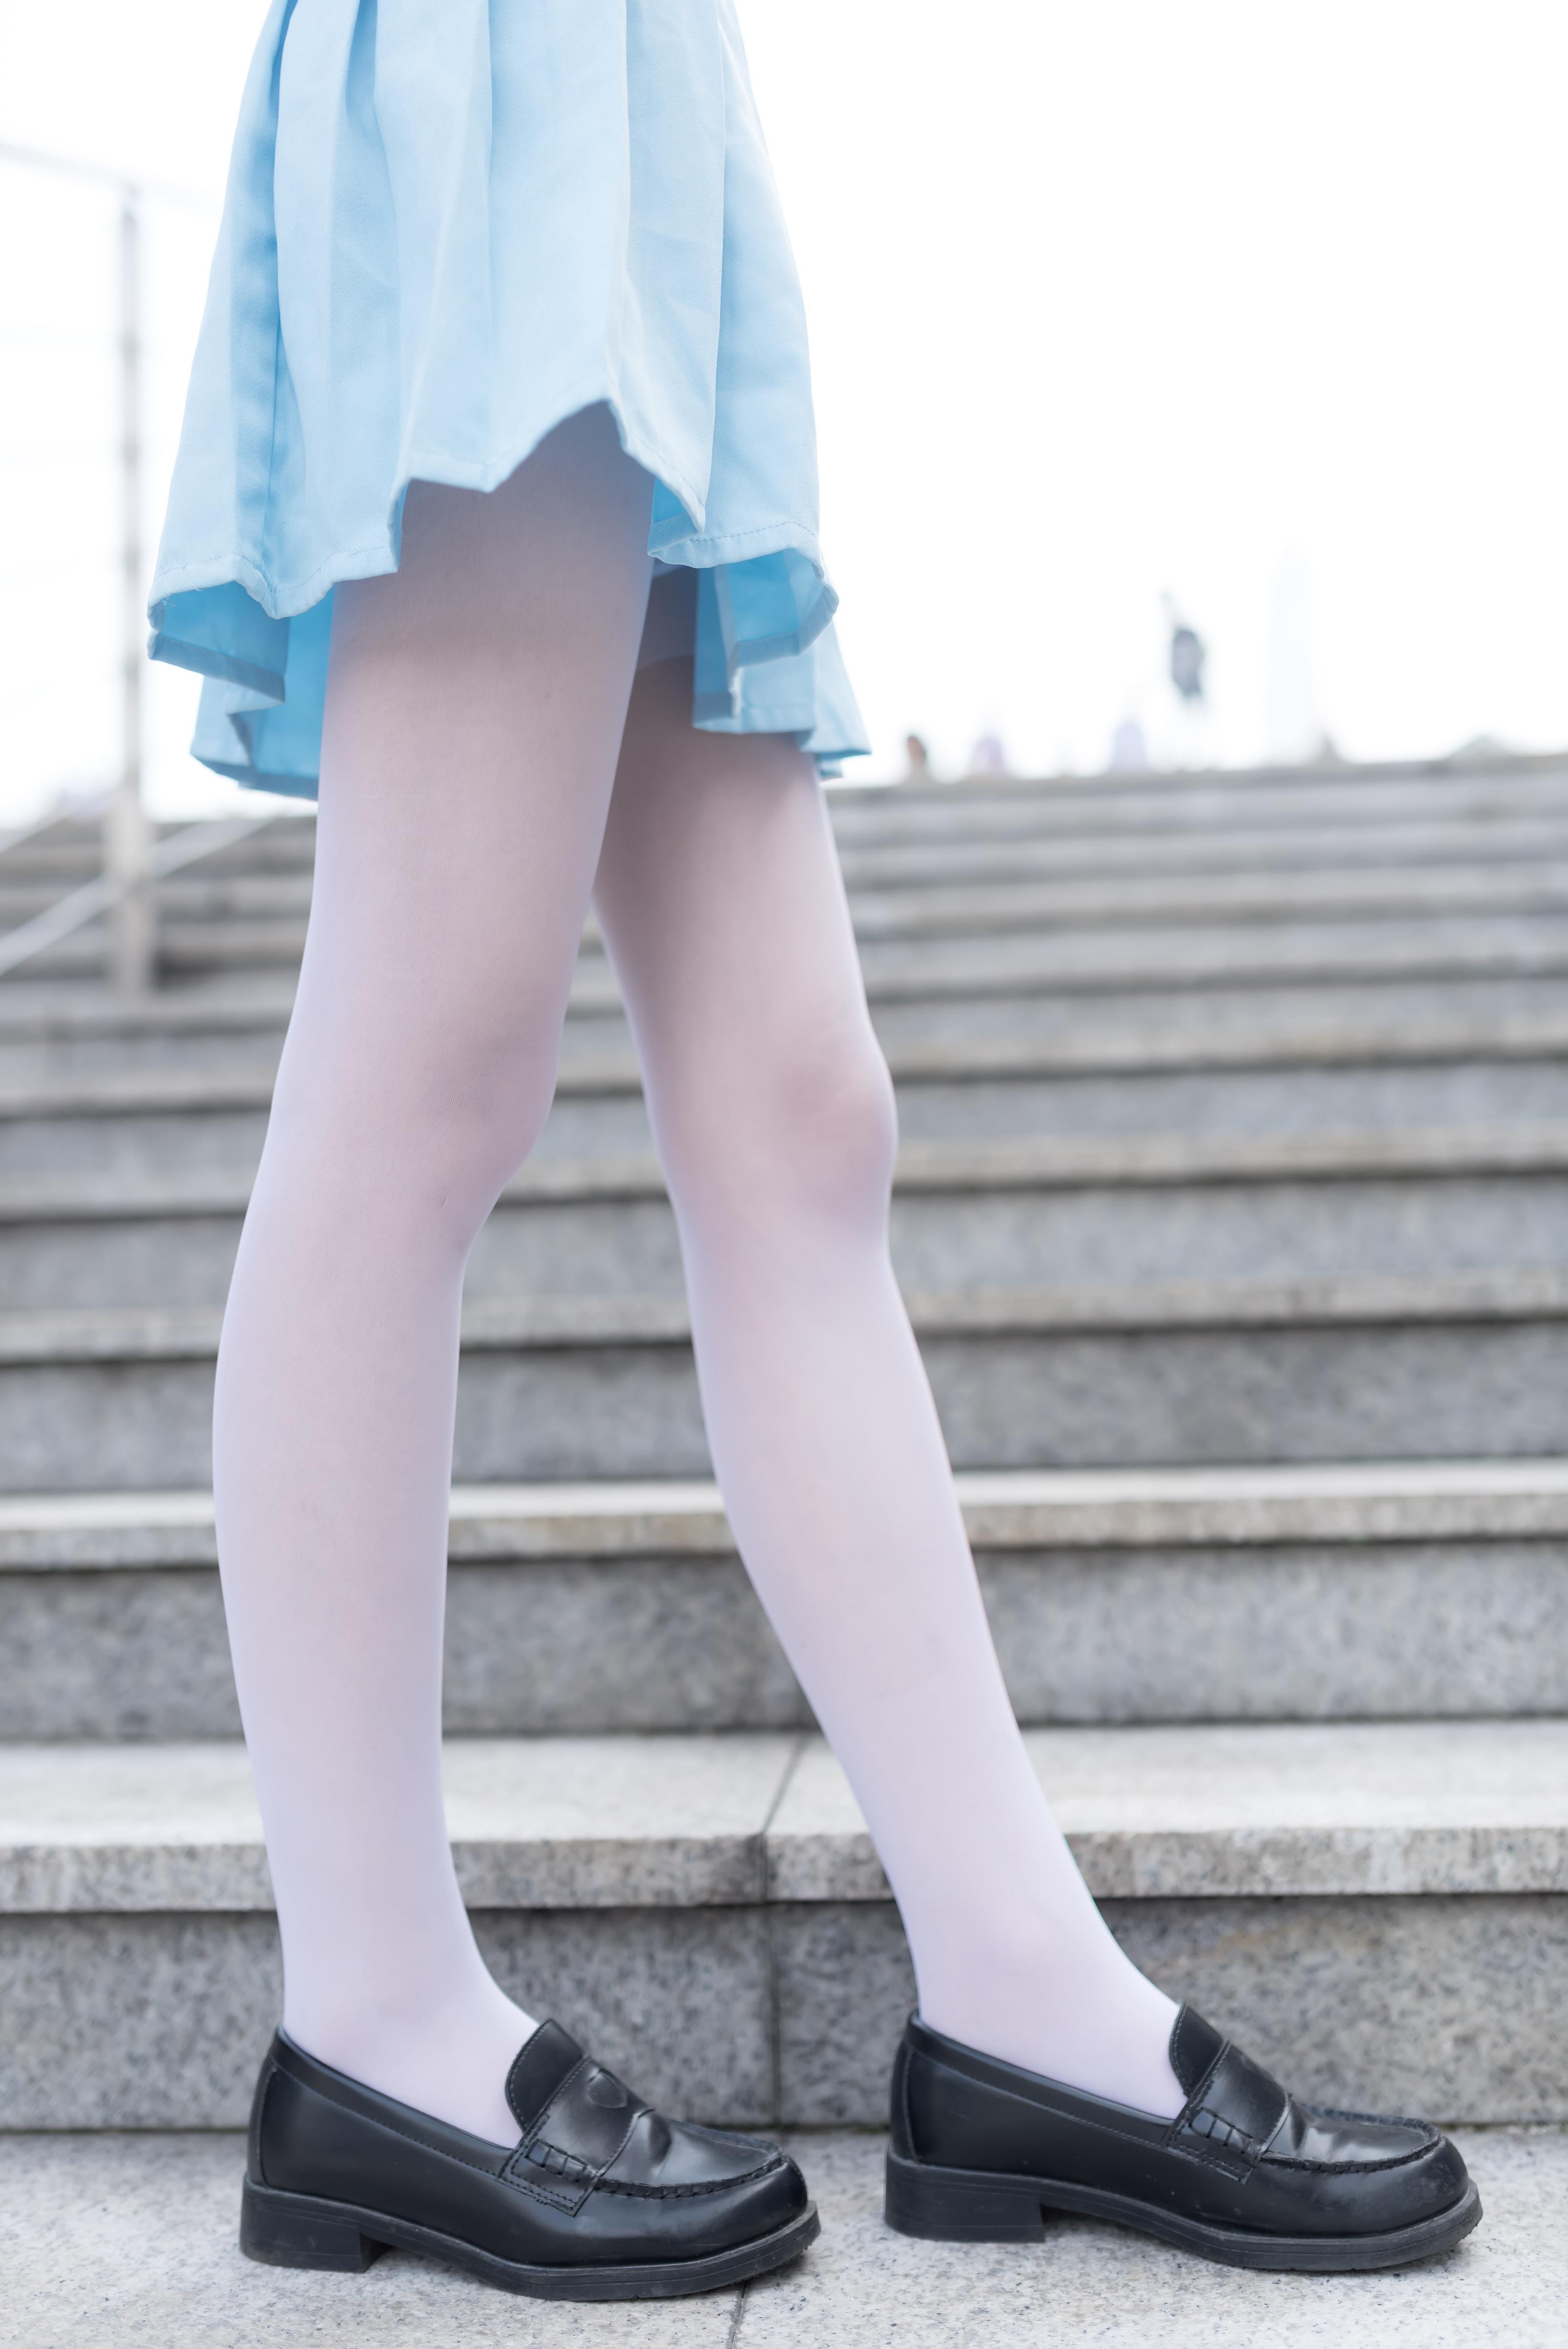 [风之领域]NO.028 性感小萝莉白色镂空上衣与淡蓝色短裙加白色丝袜美腿私房写真集,